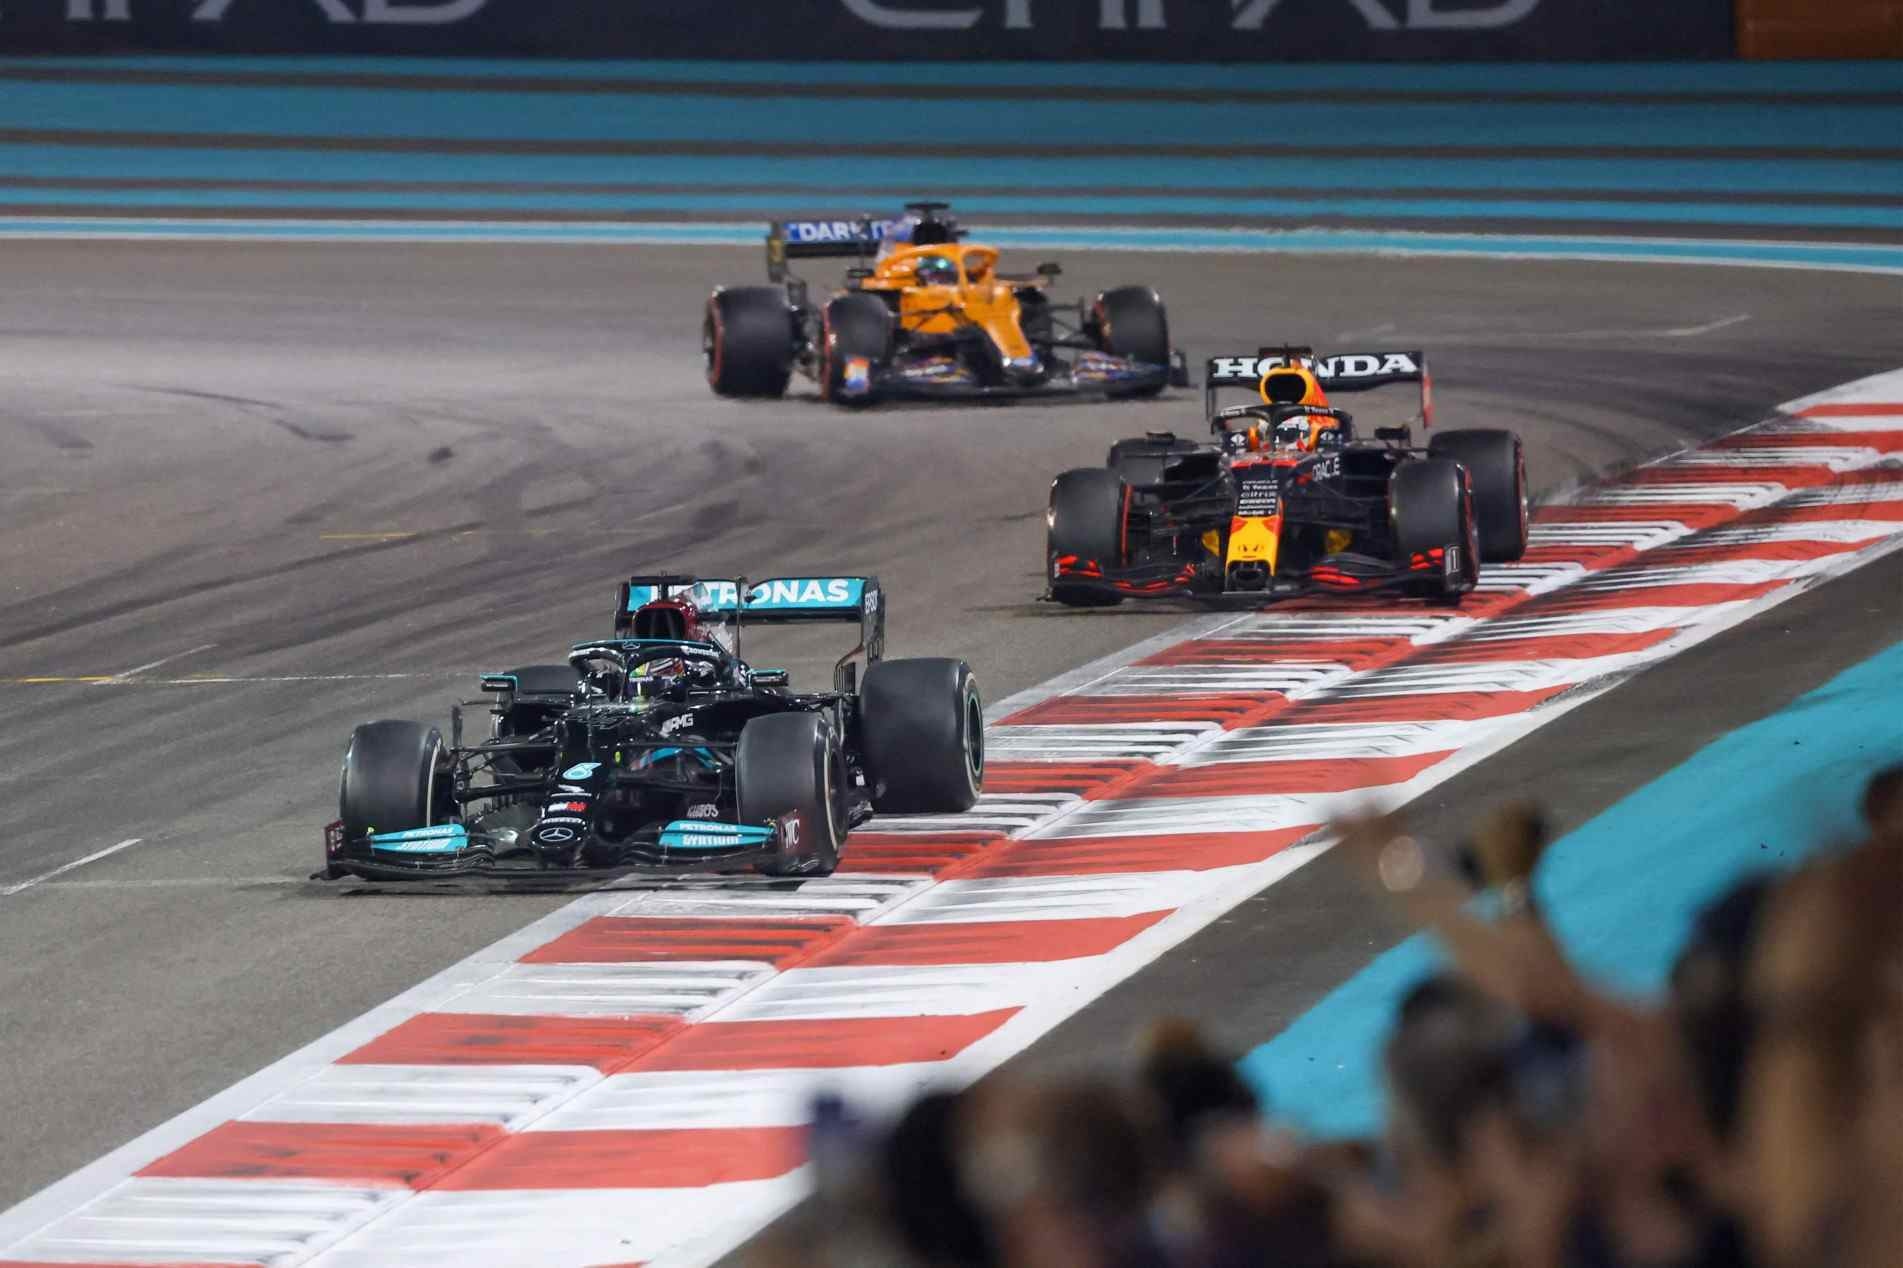 Hamilton liderou o GP de Abi Dabi até decisão polêmica que suspendeu o safety car na última volta.